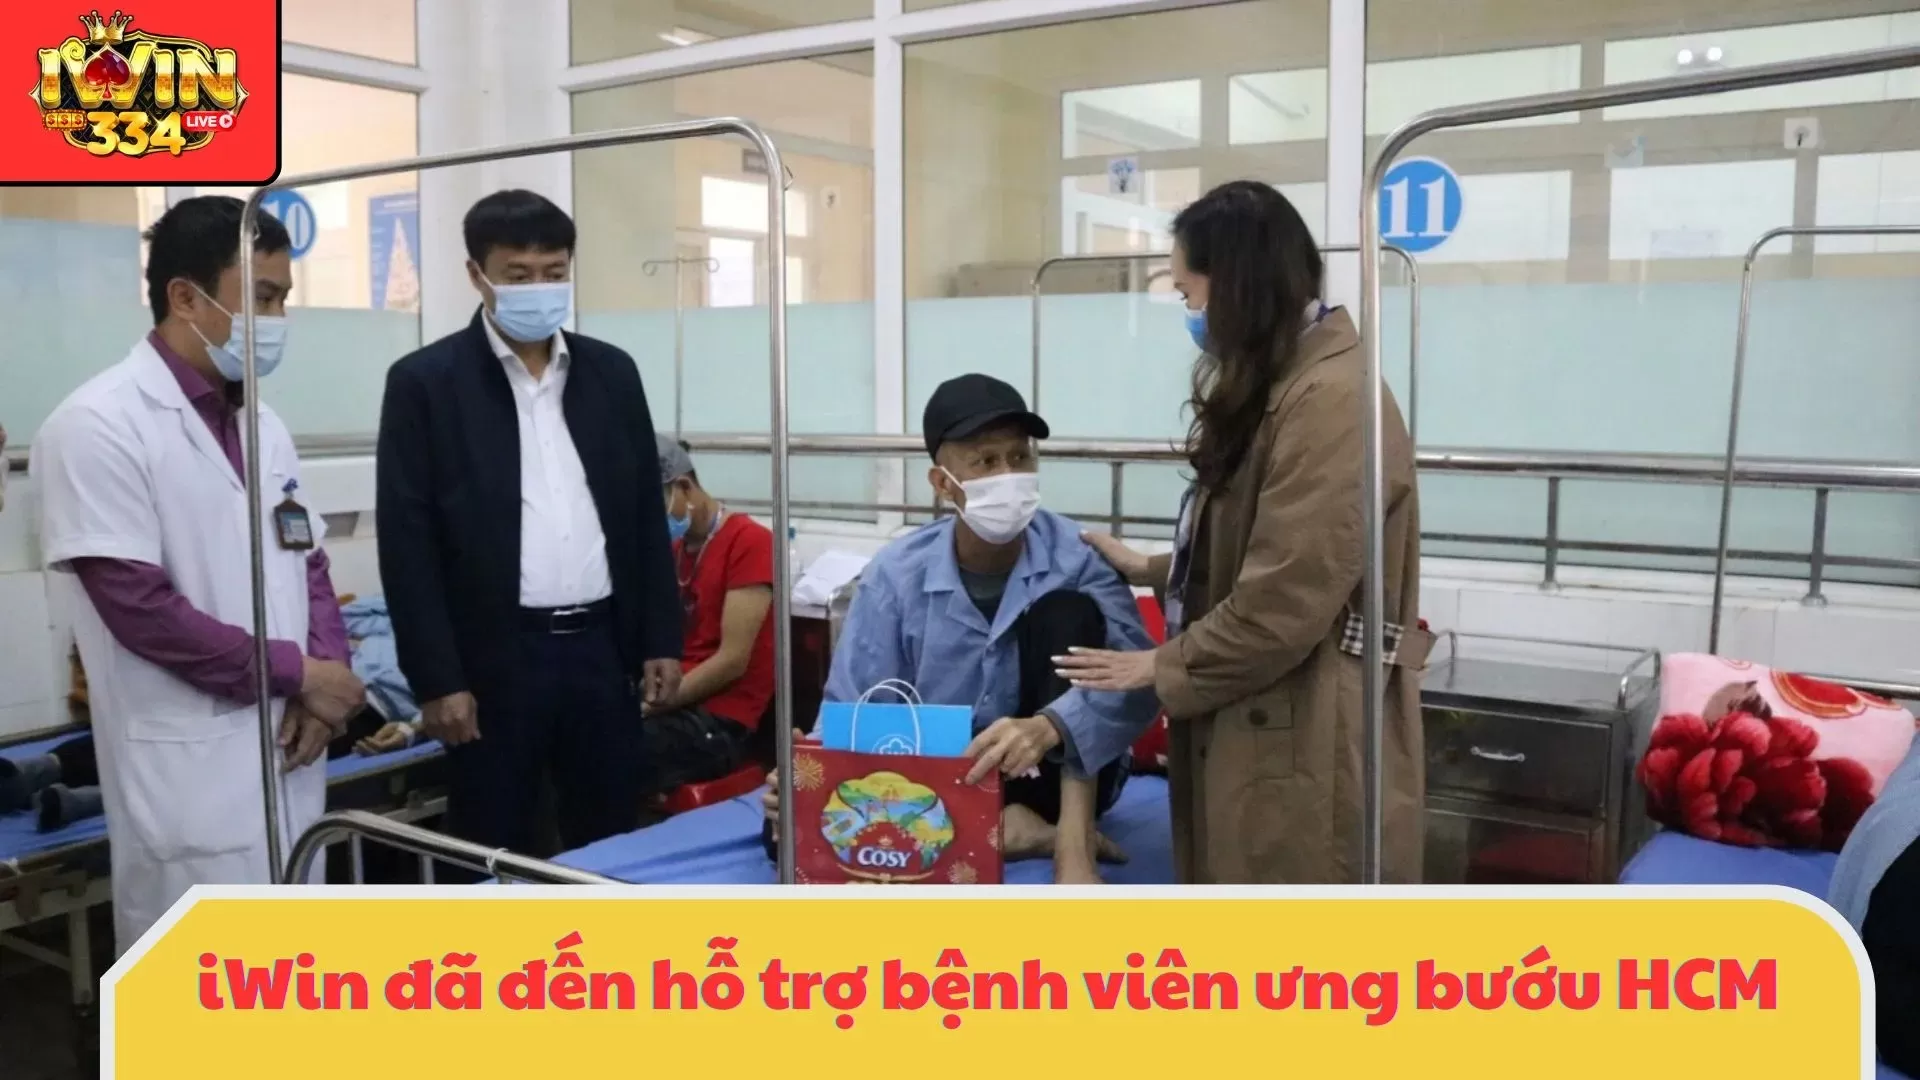 Gieo Hạt Yêu Thương: iWin gửi lời chúc tốt đẹp vào mỗi góc nhỏ của Bệnh Viện Ung Bướu TP.HCM